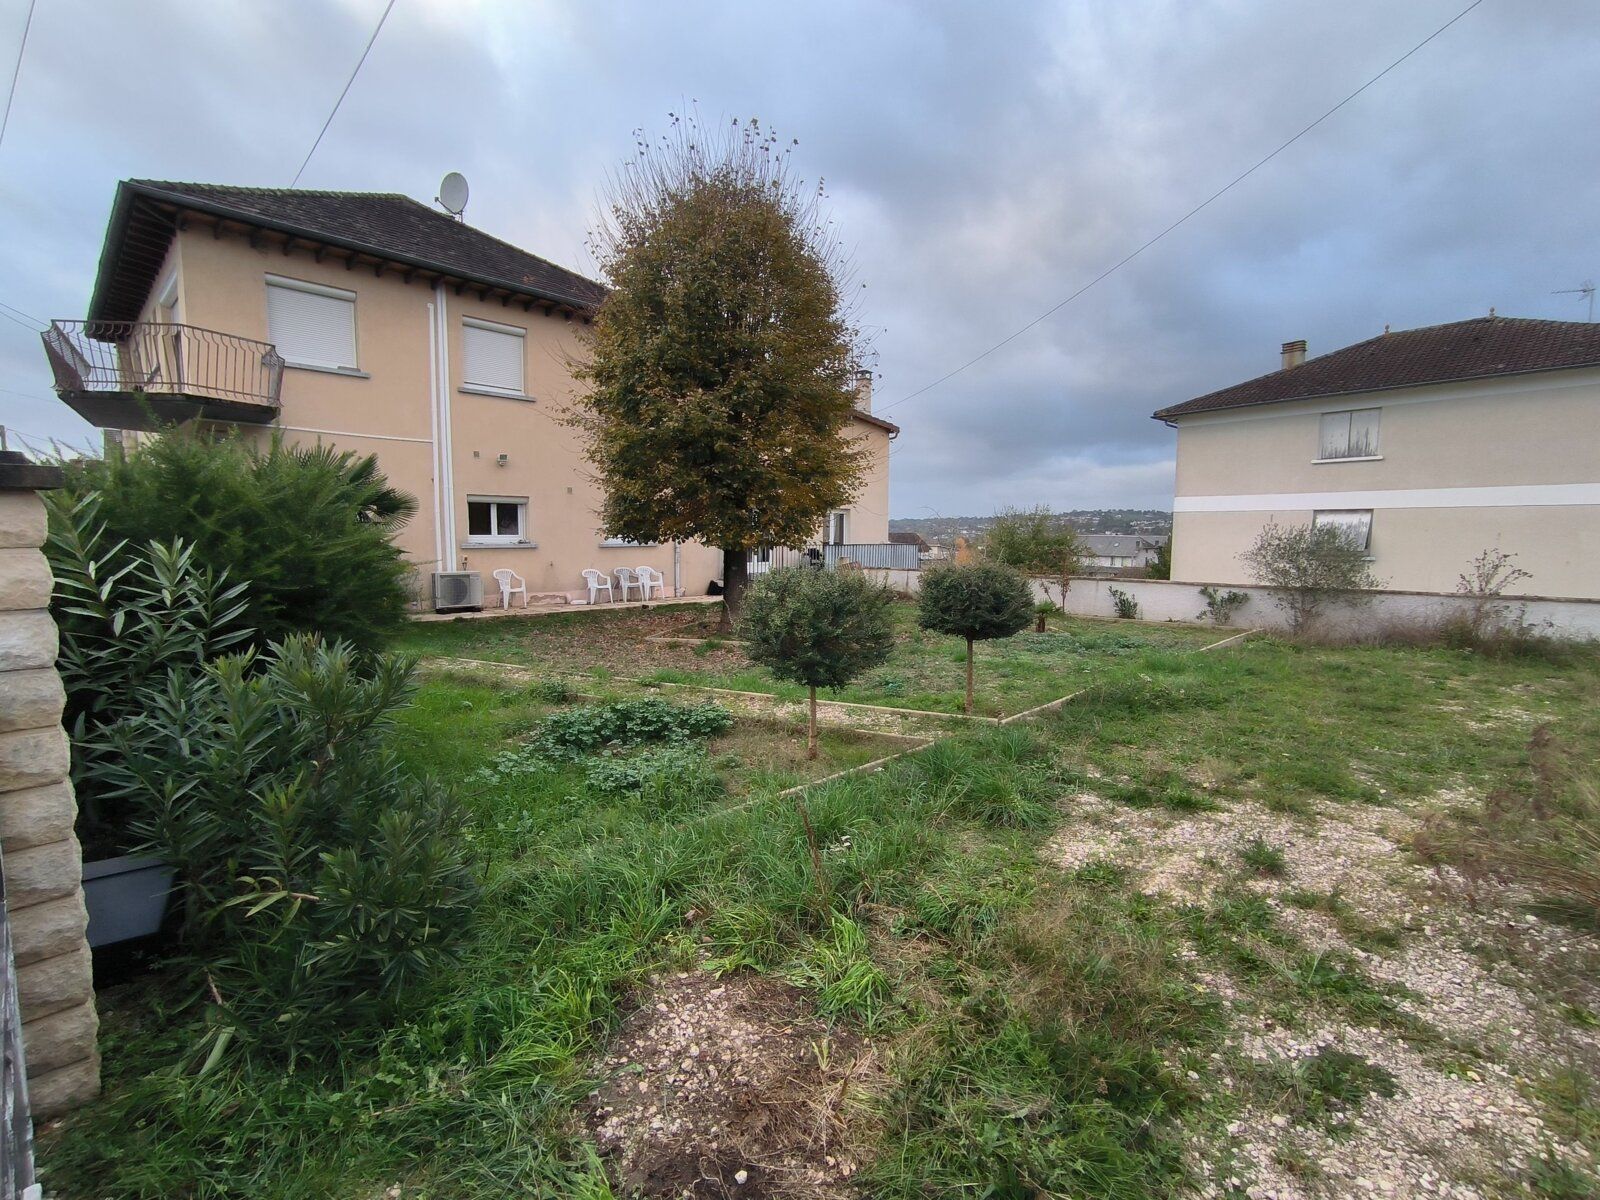 Maison à vendre 8 240m2 à Malemort-sur-Corrèze vignette-2